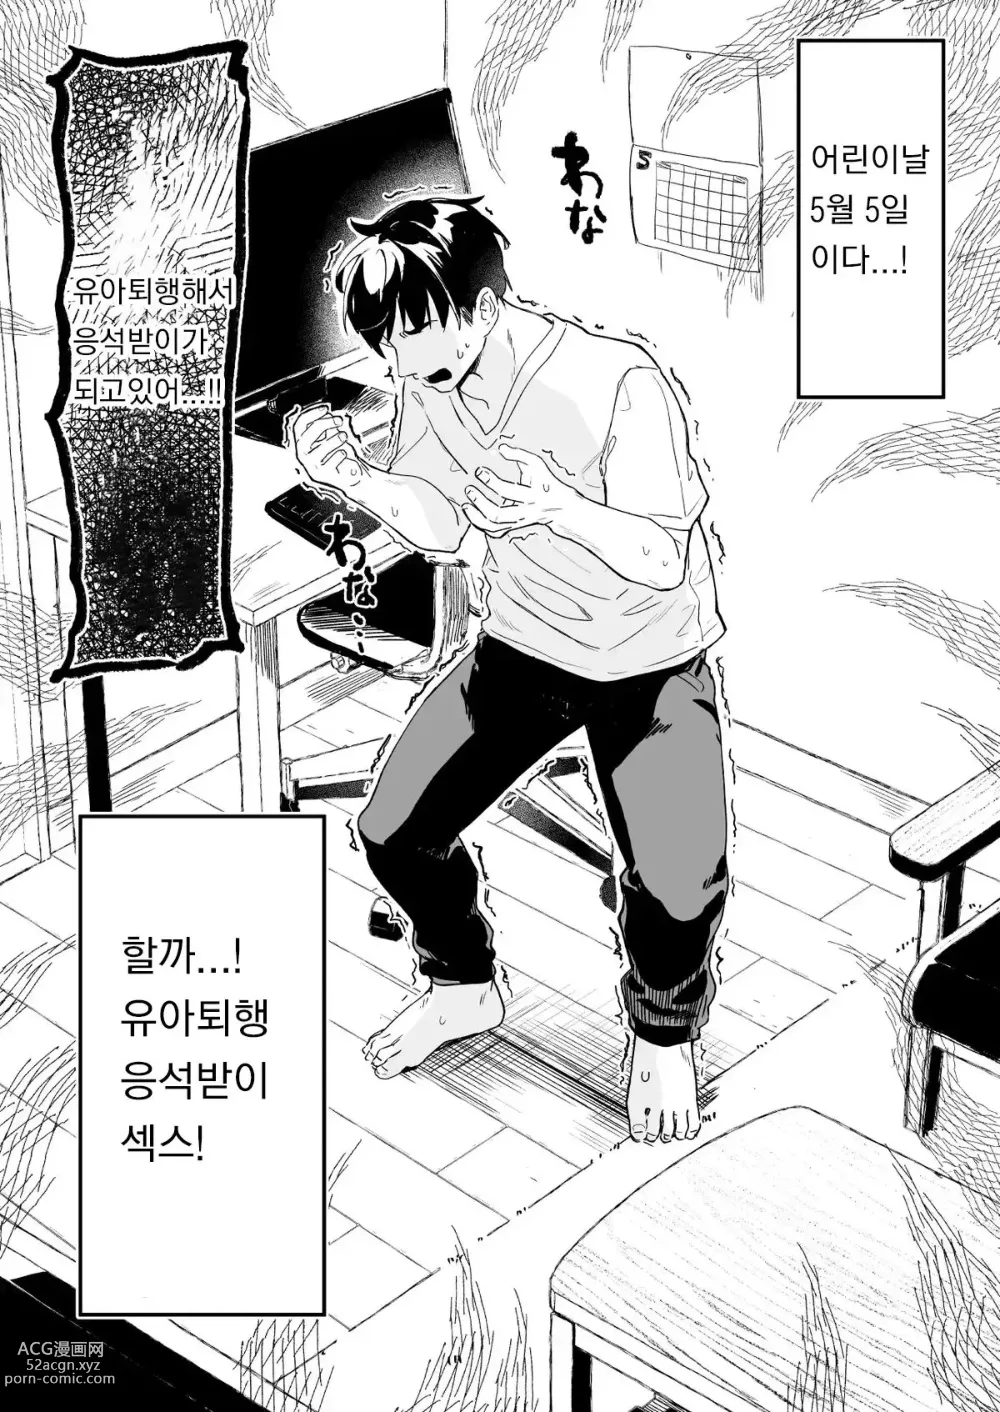 Page 1 of doujinshi Kodomo no Hi (Imishin) ni Mukete Manga o Kaku